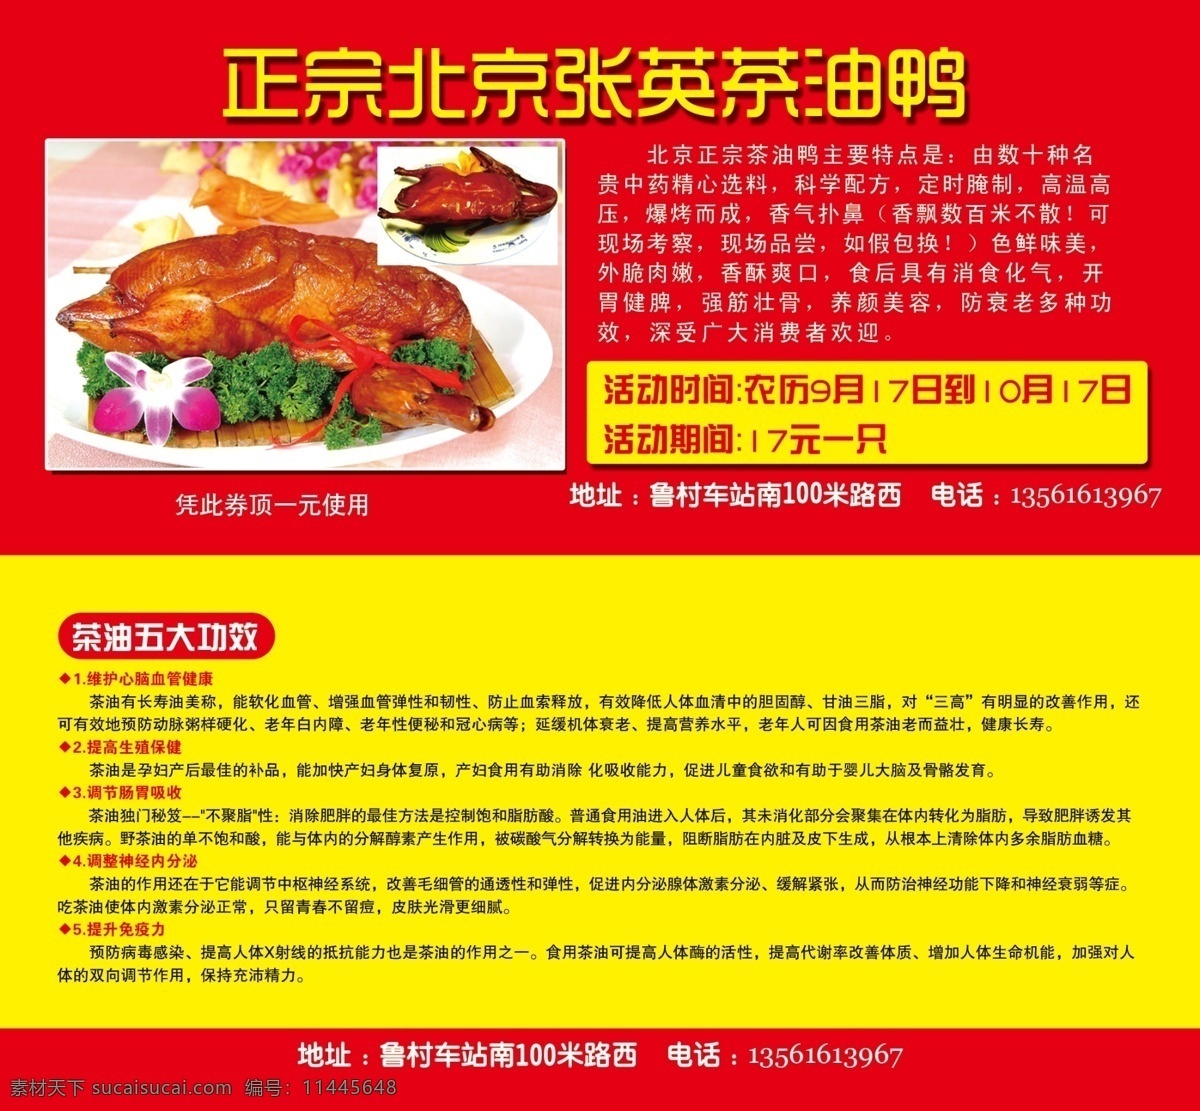 北京茶油鸭 茶油鸭 茶油鸭功效 开业 优惠活动 广告模板 广告设计模板 源文件